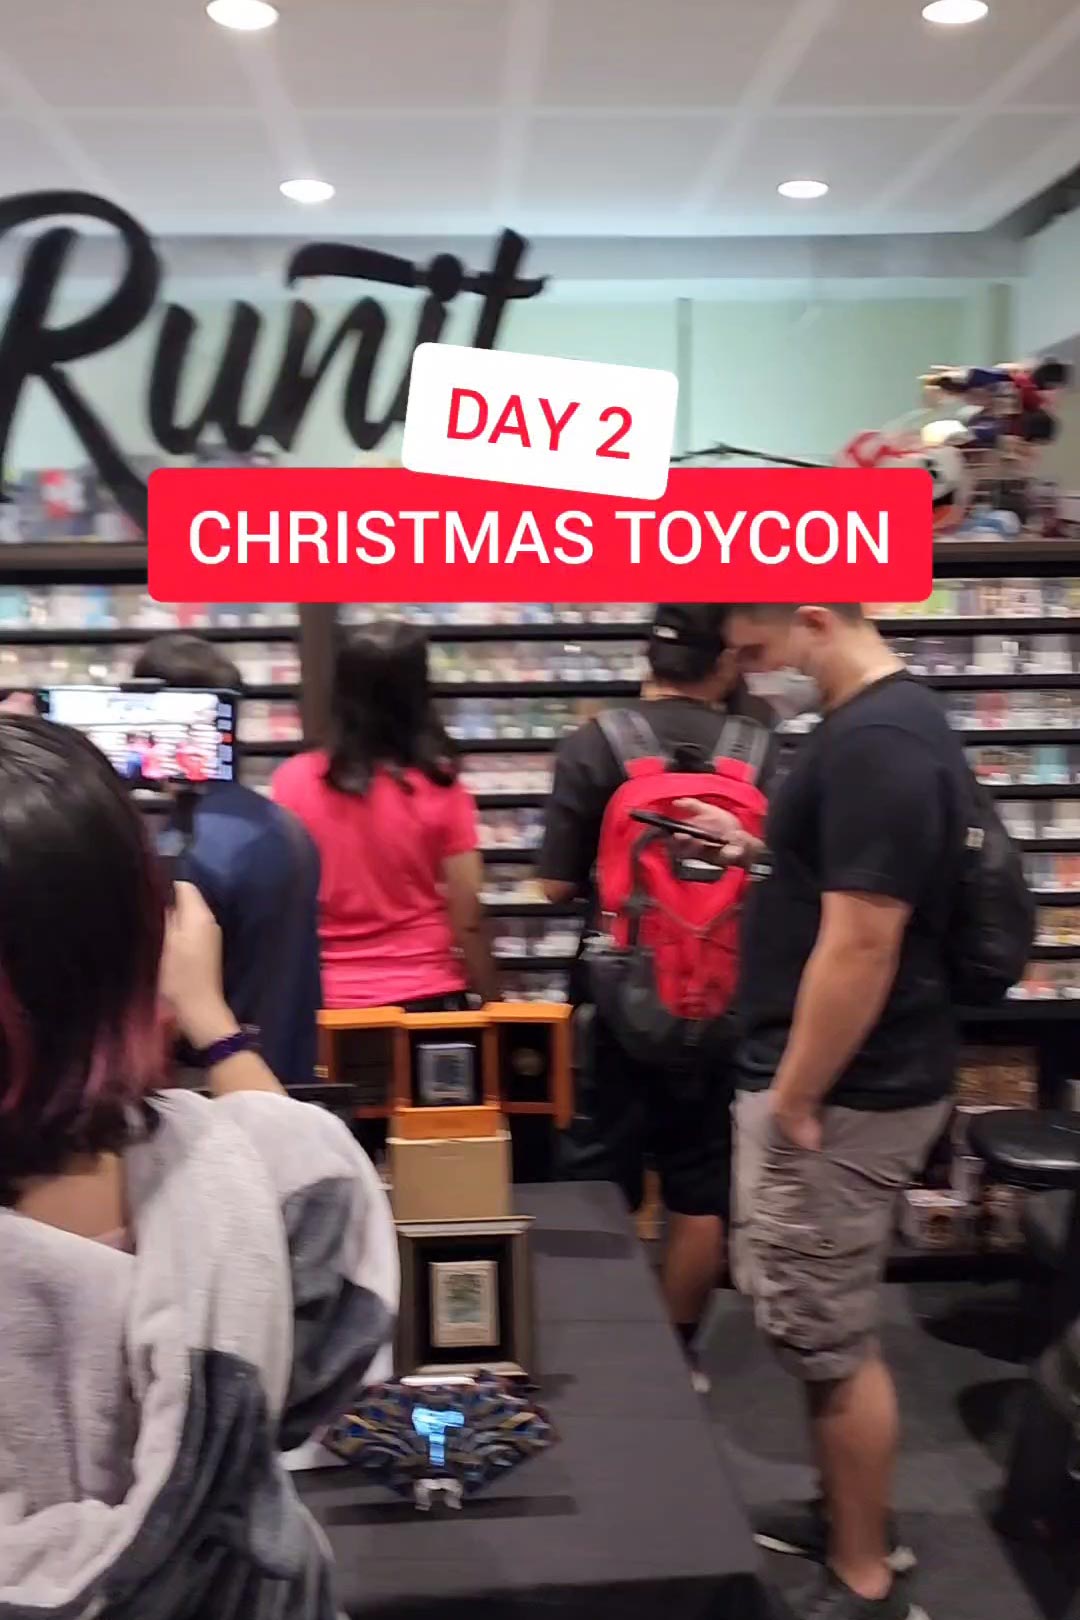 Christmas ToyCon Day 2!